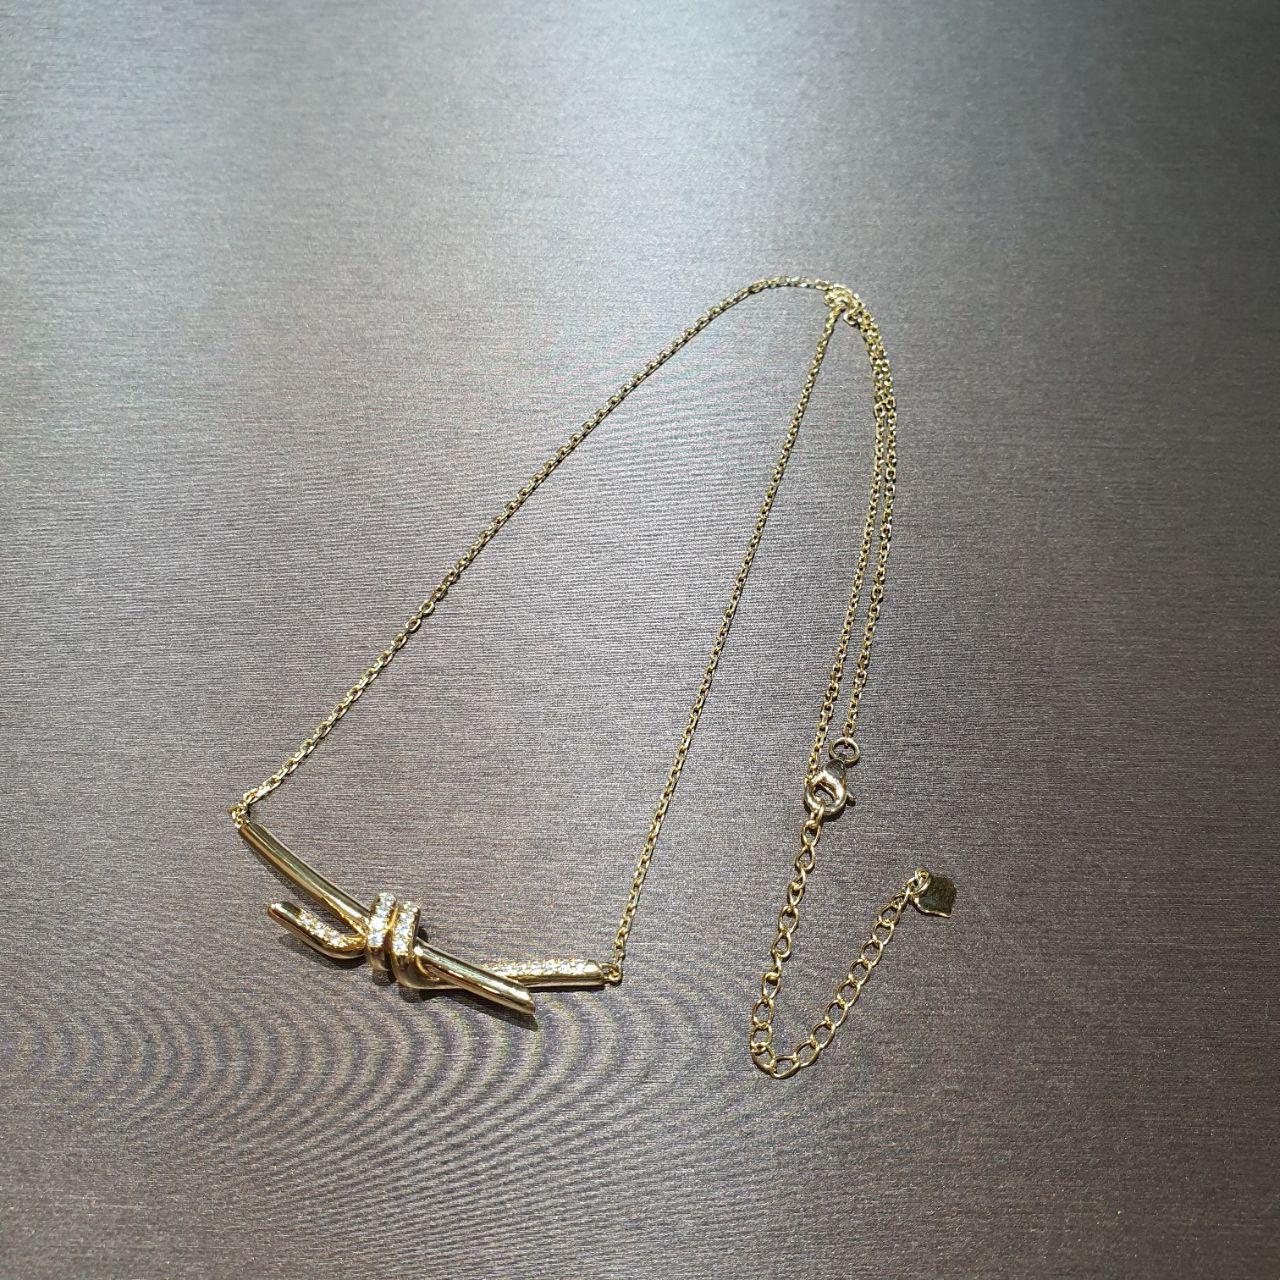 22k / 916 Gold Knot Necklace-Necklaces-Best Gold Shop